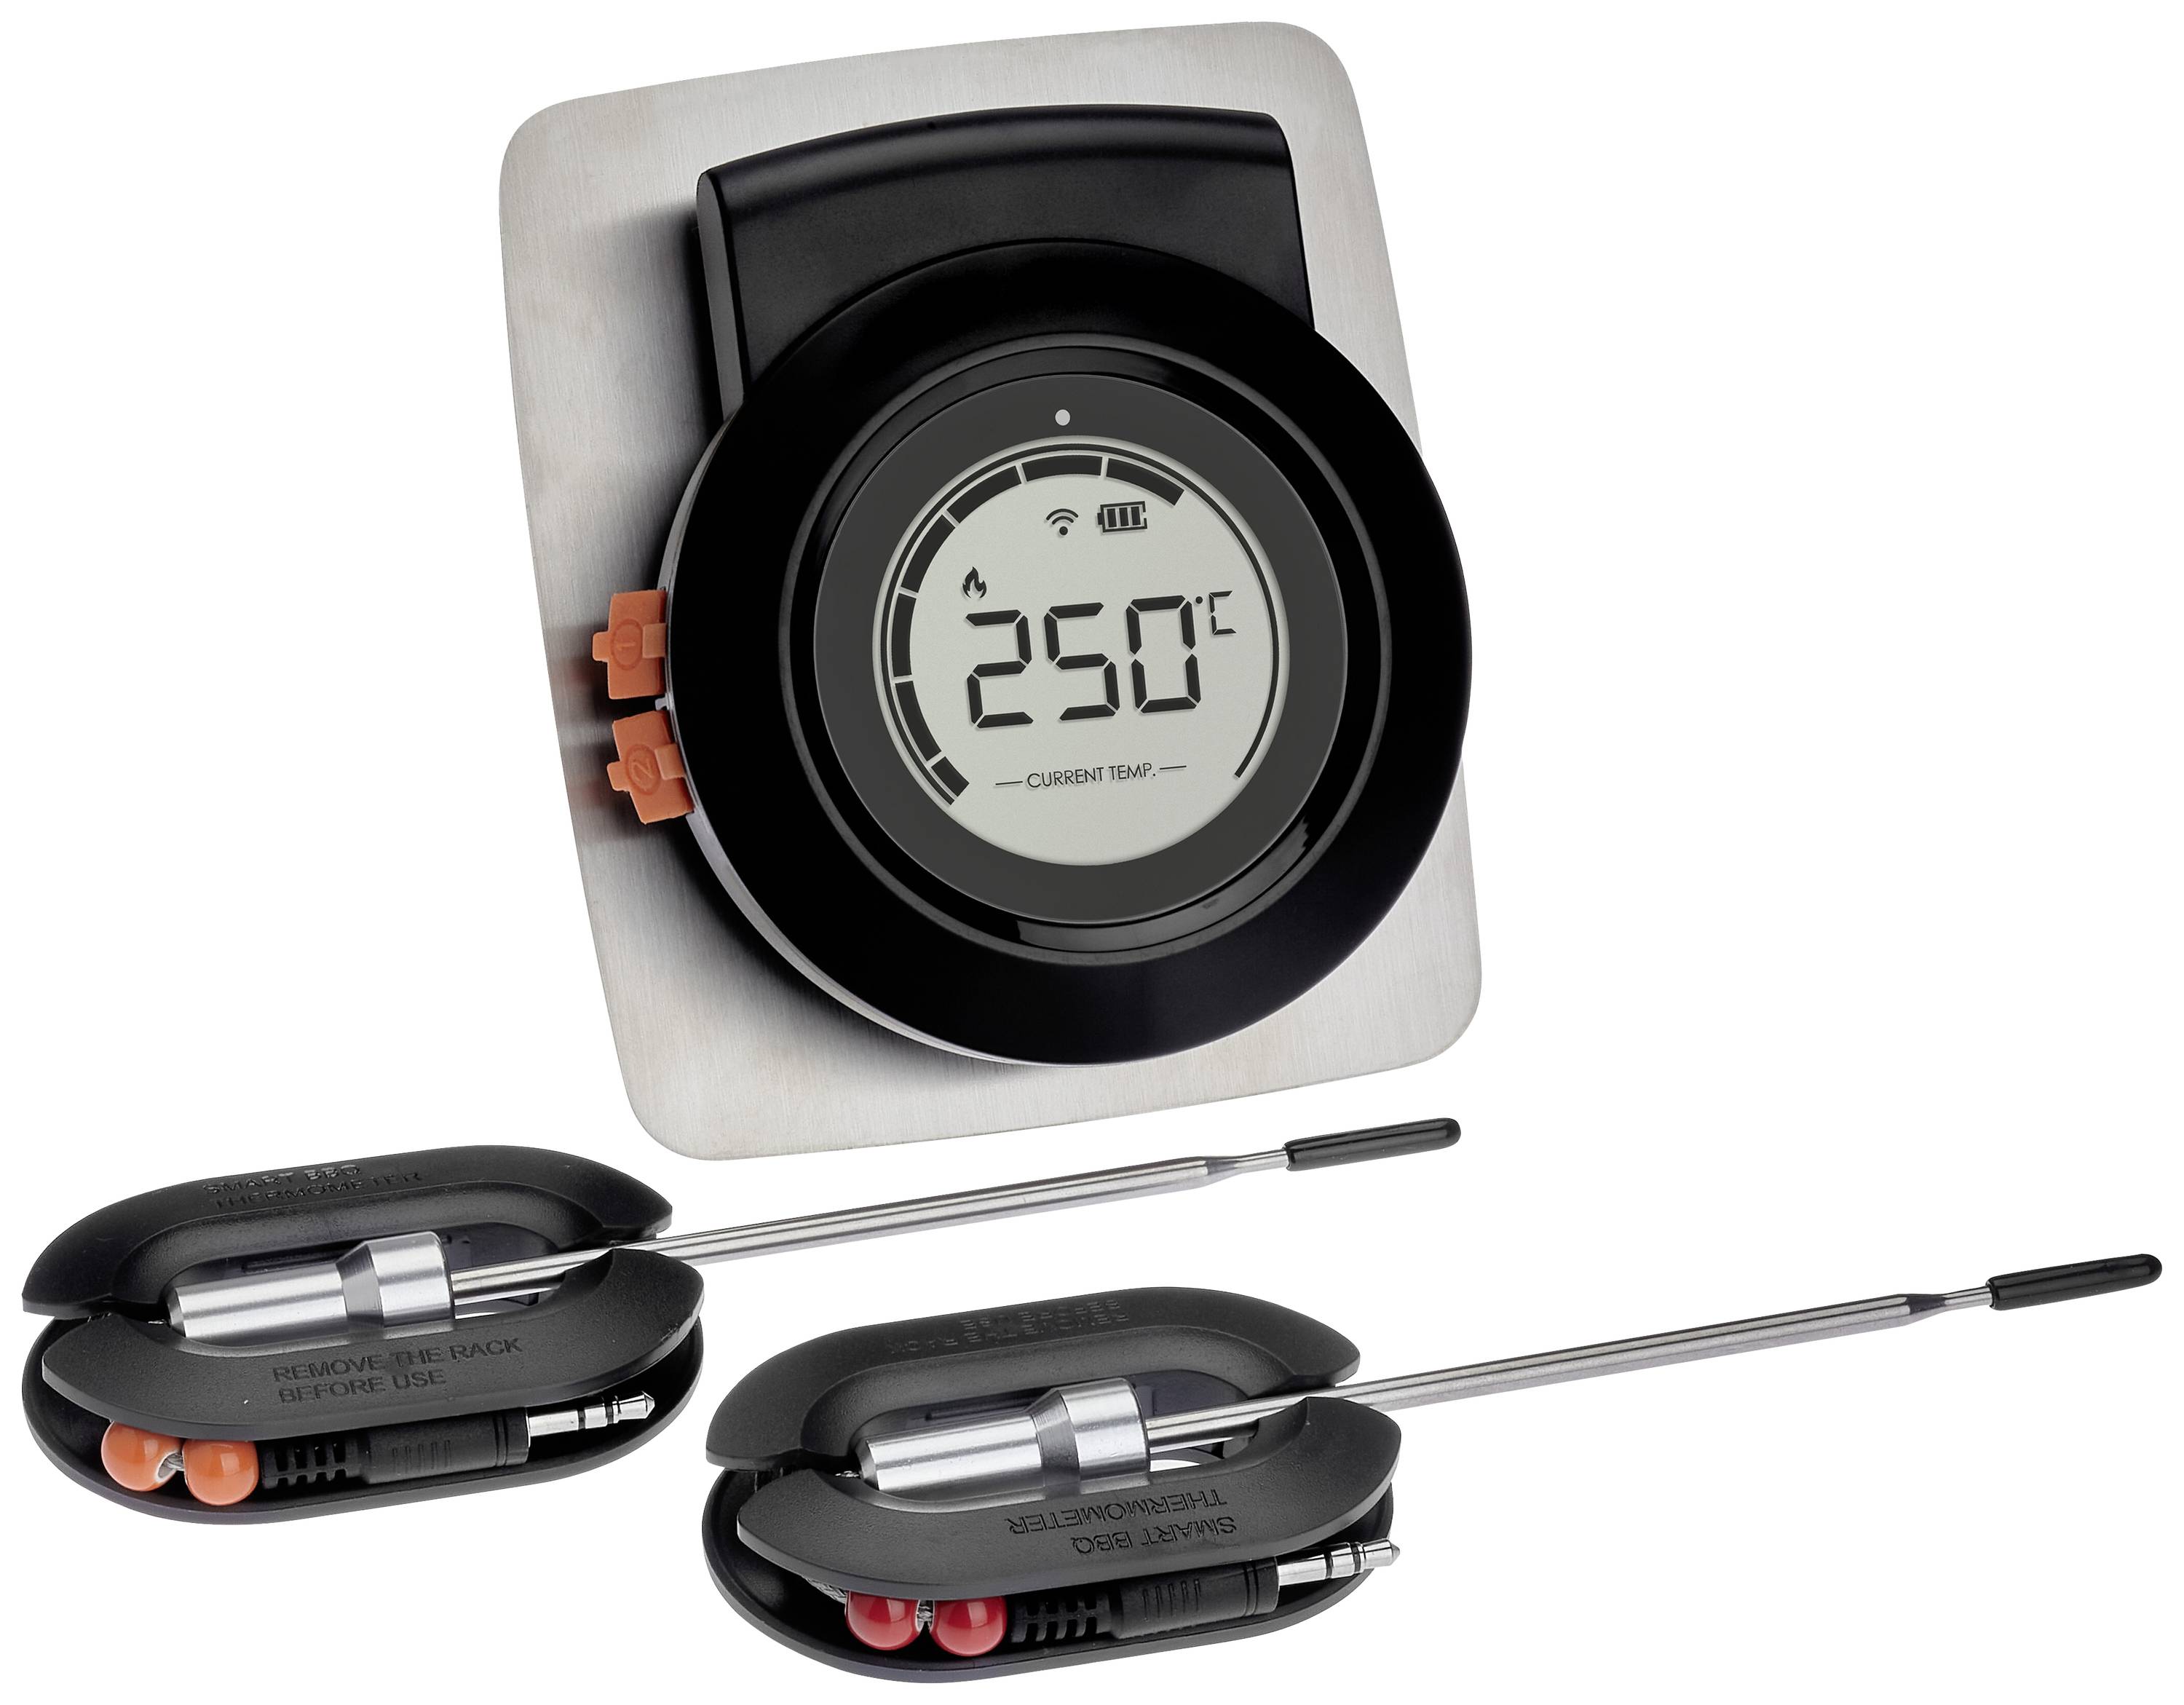 TFA DOSTMANN 14.1513.01 Grill-Thermometer Alarm, Kabelsensor, Kostenlose App, Überwachung der Kernte